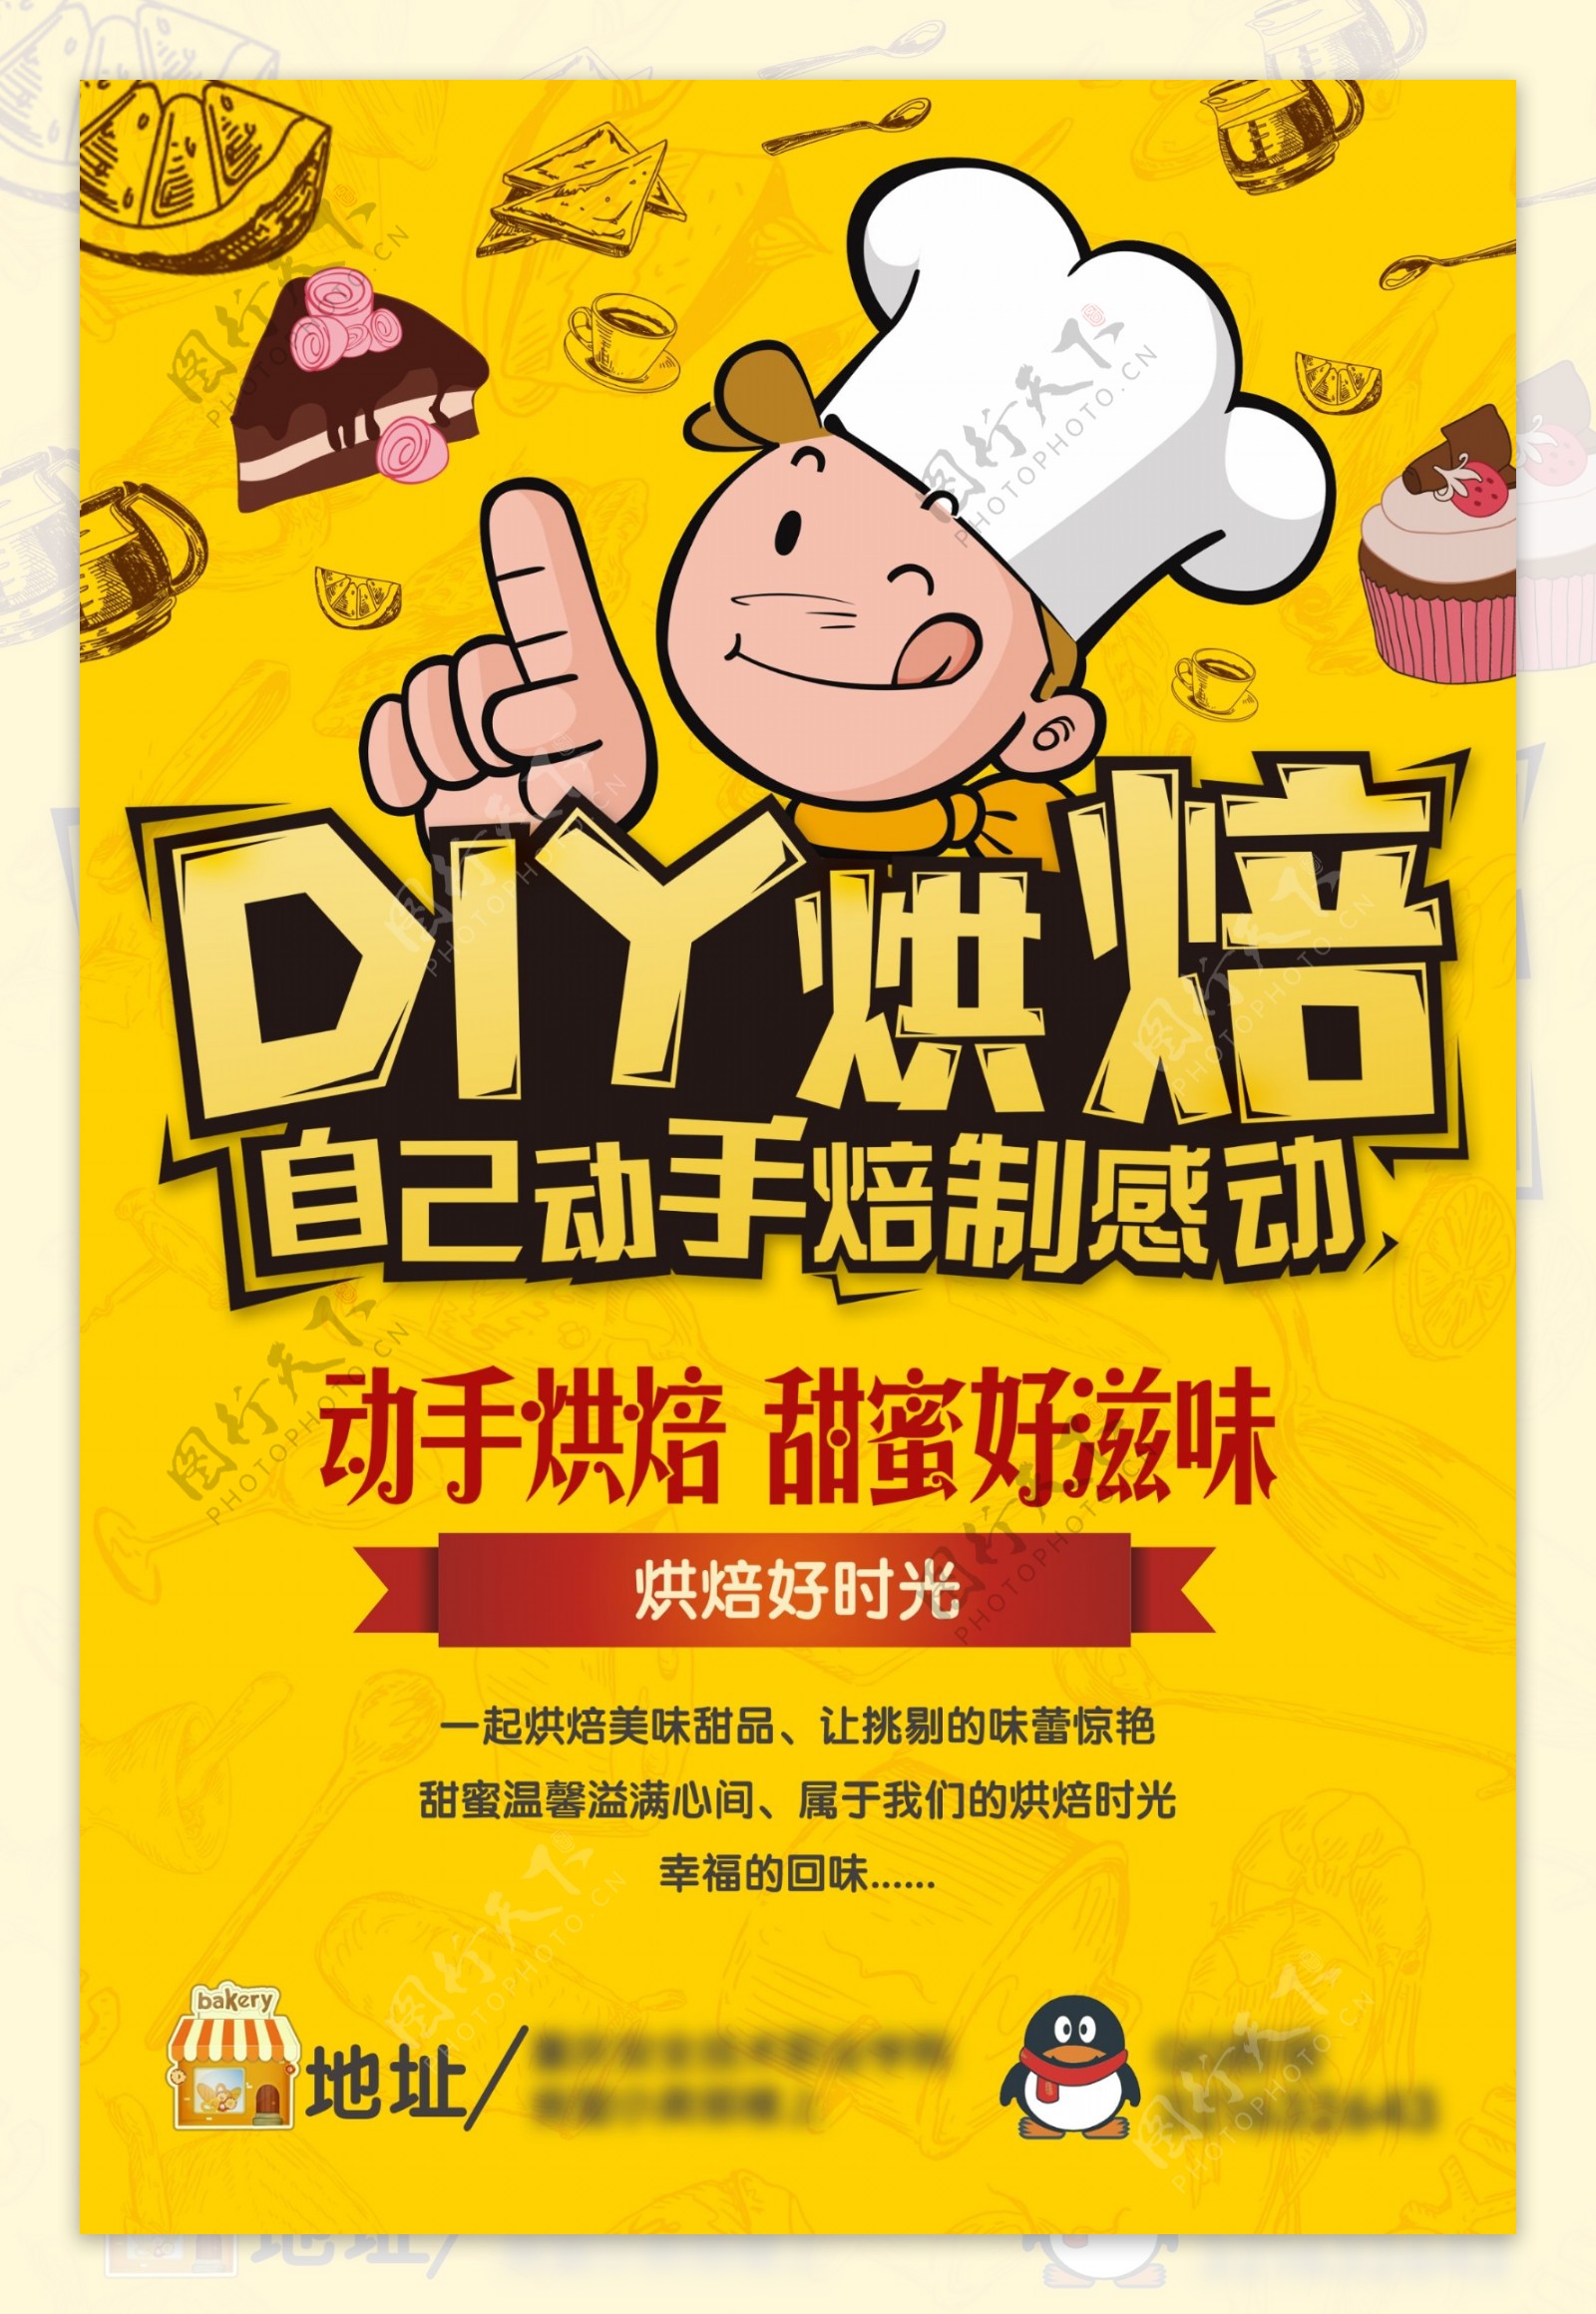 创意烘焙食品海报设计PSD烘培食品广告设计